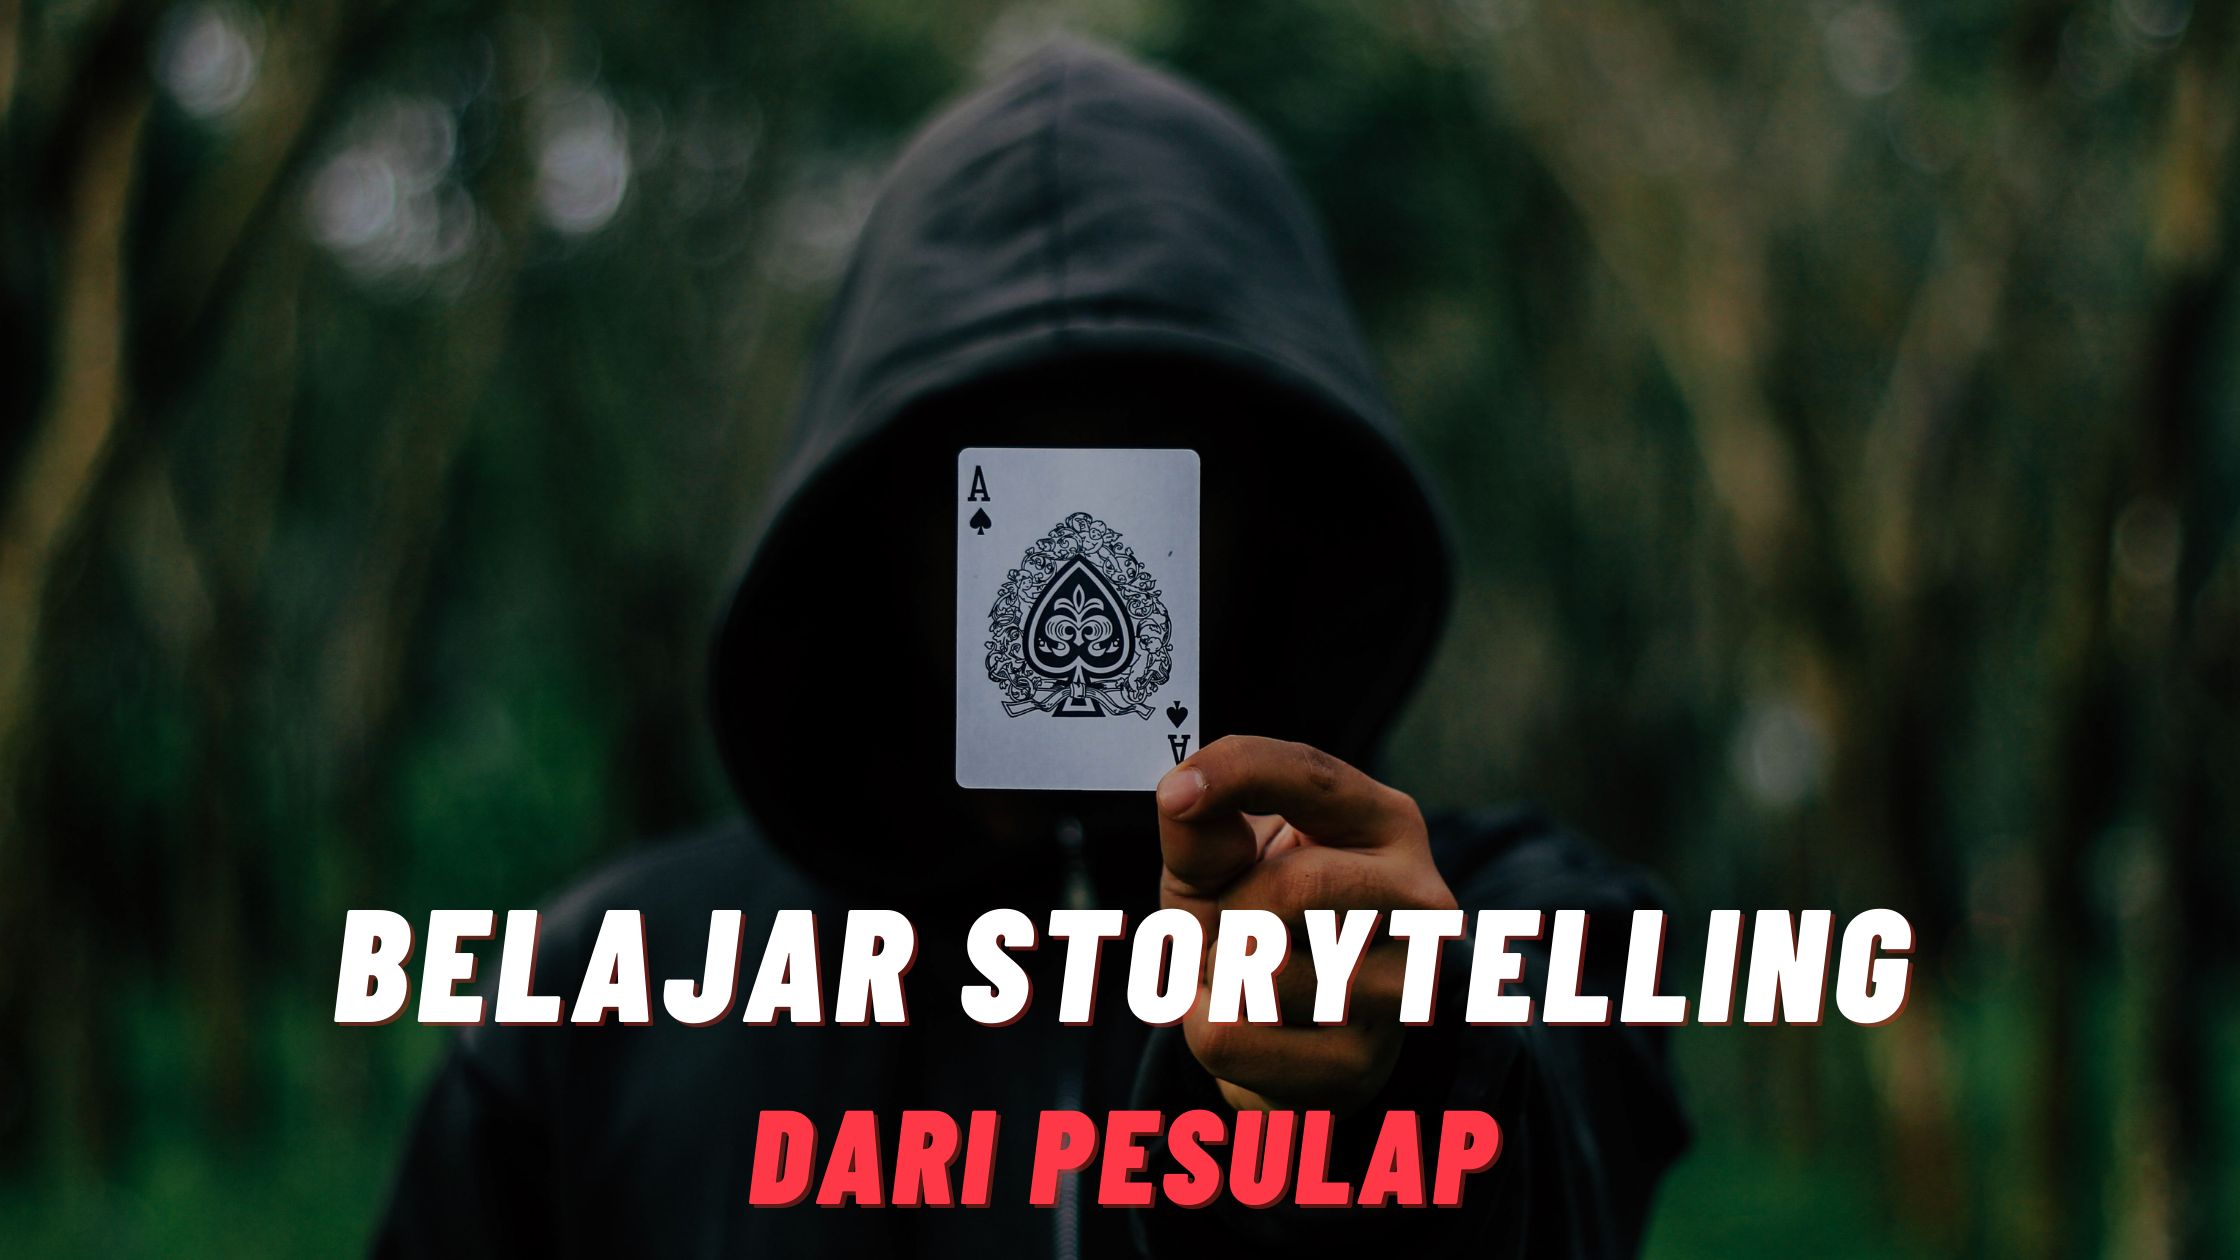 Tambah Skill Storytelling dengan Belajar dari Pesulap